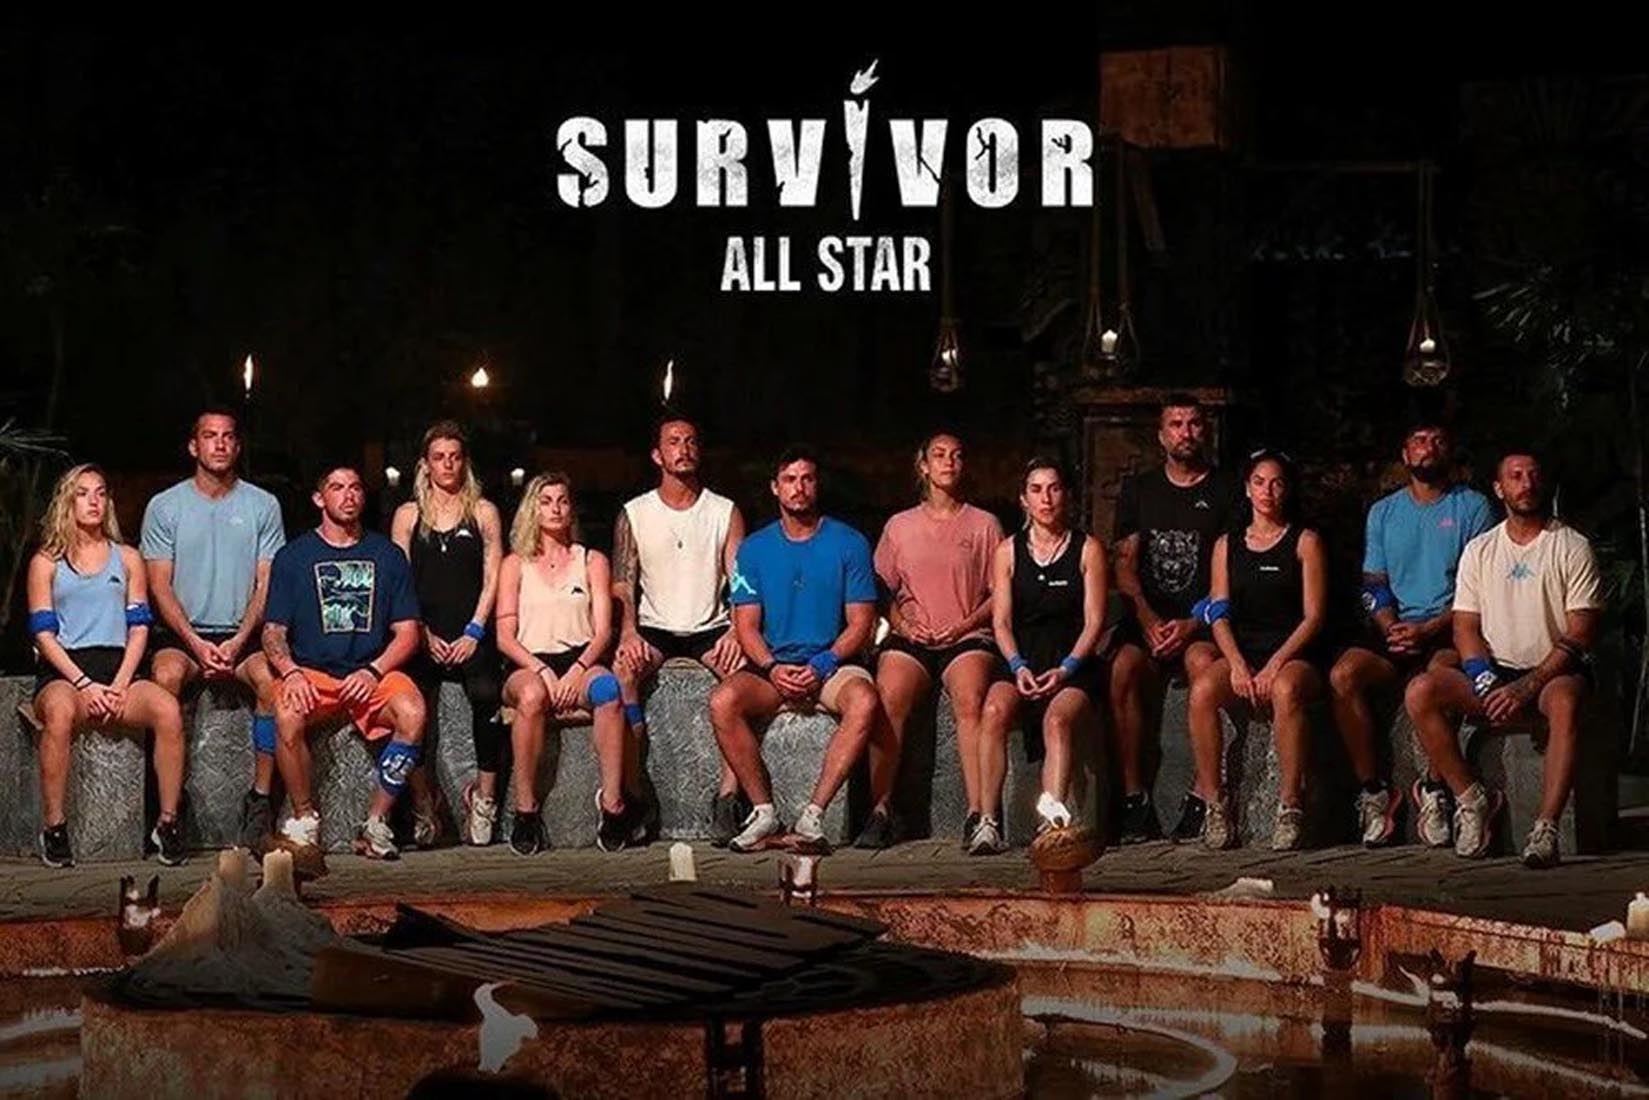 Survivor ödül oyunu kim kazandı 23 Şubat 2022 Çarşamba? Survivor 2022 All Star ödül oyununu hangi takım kazandı?